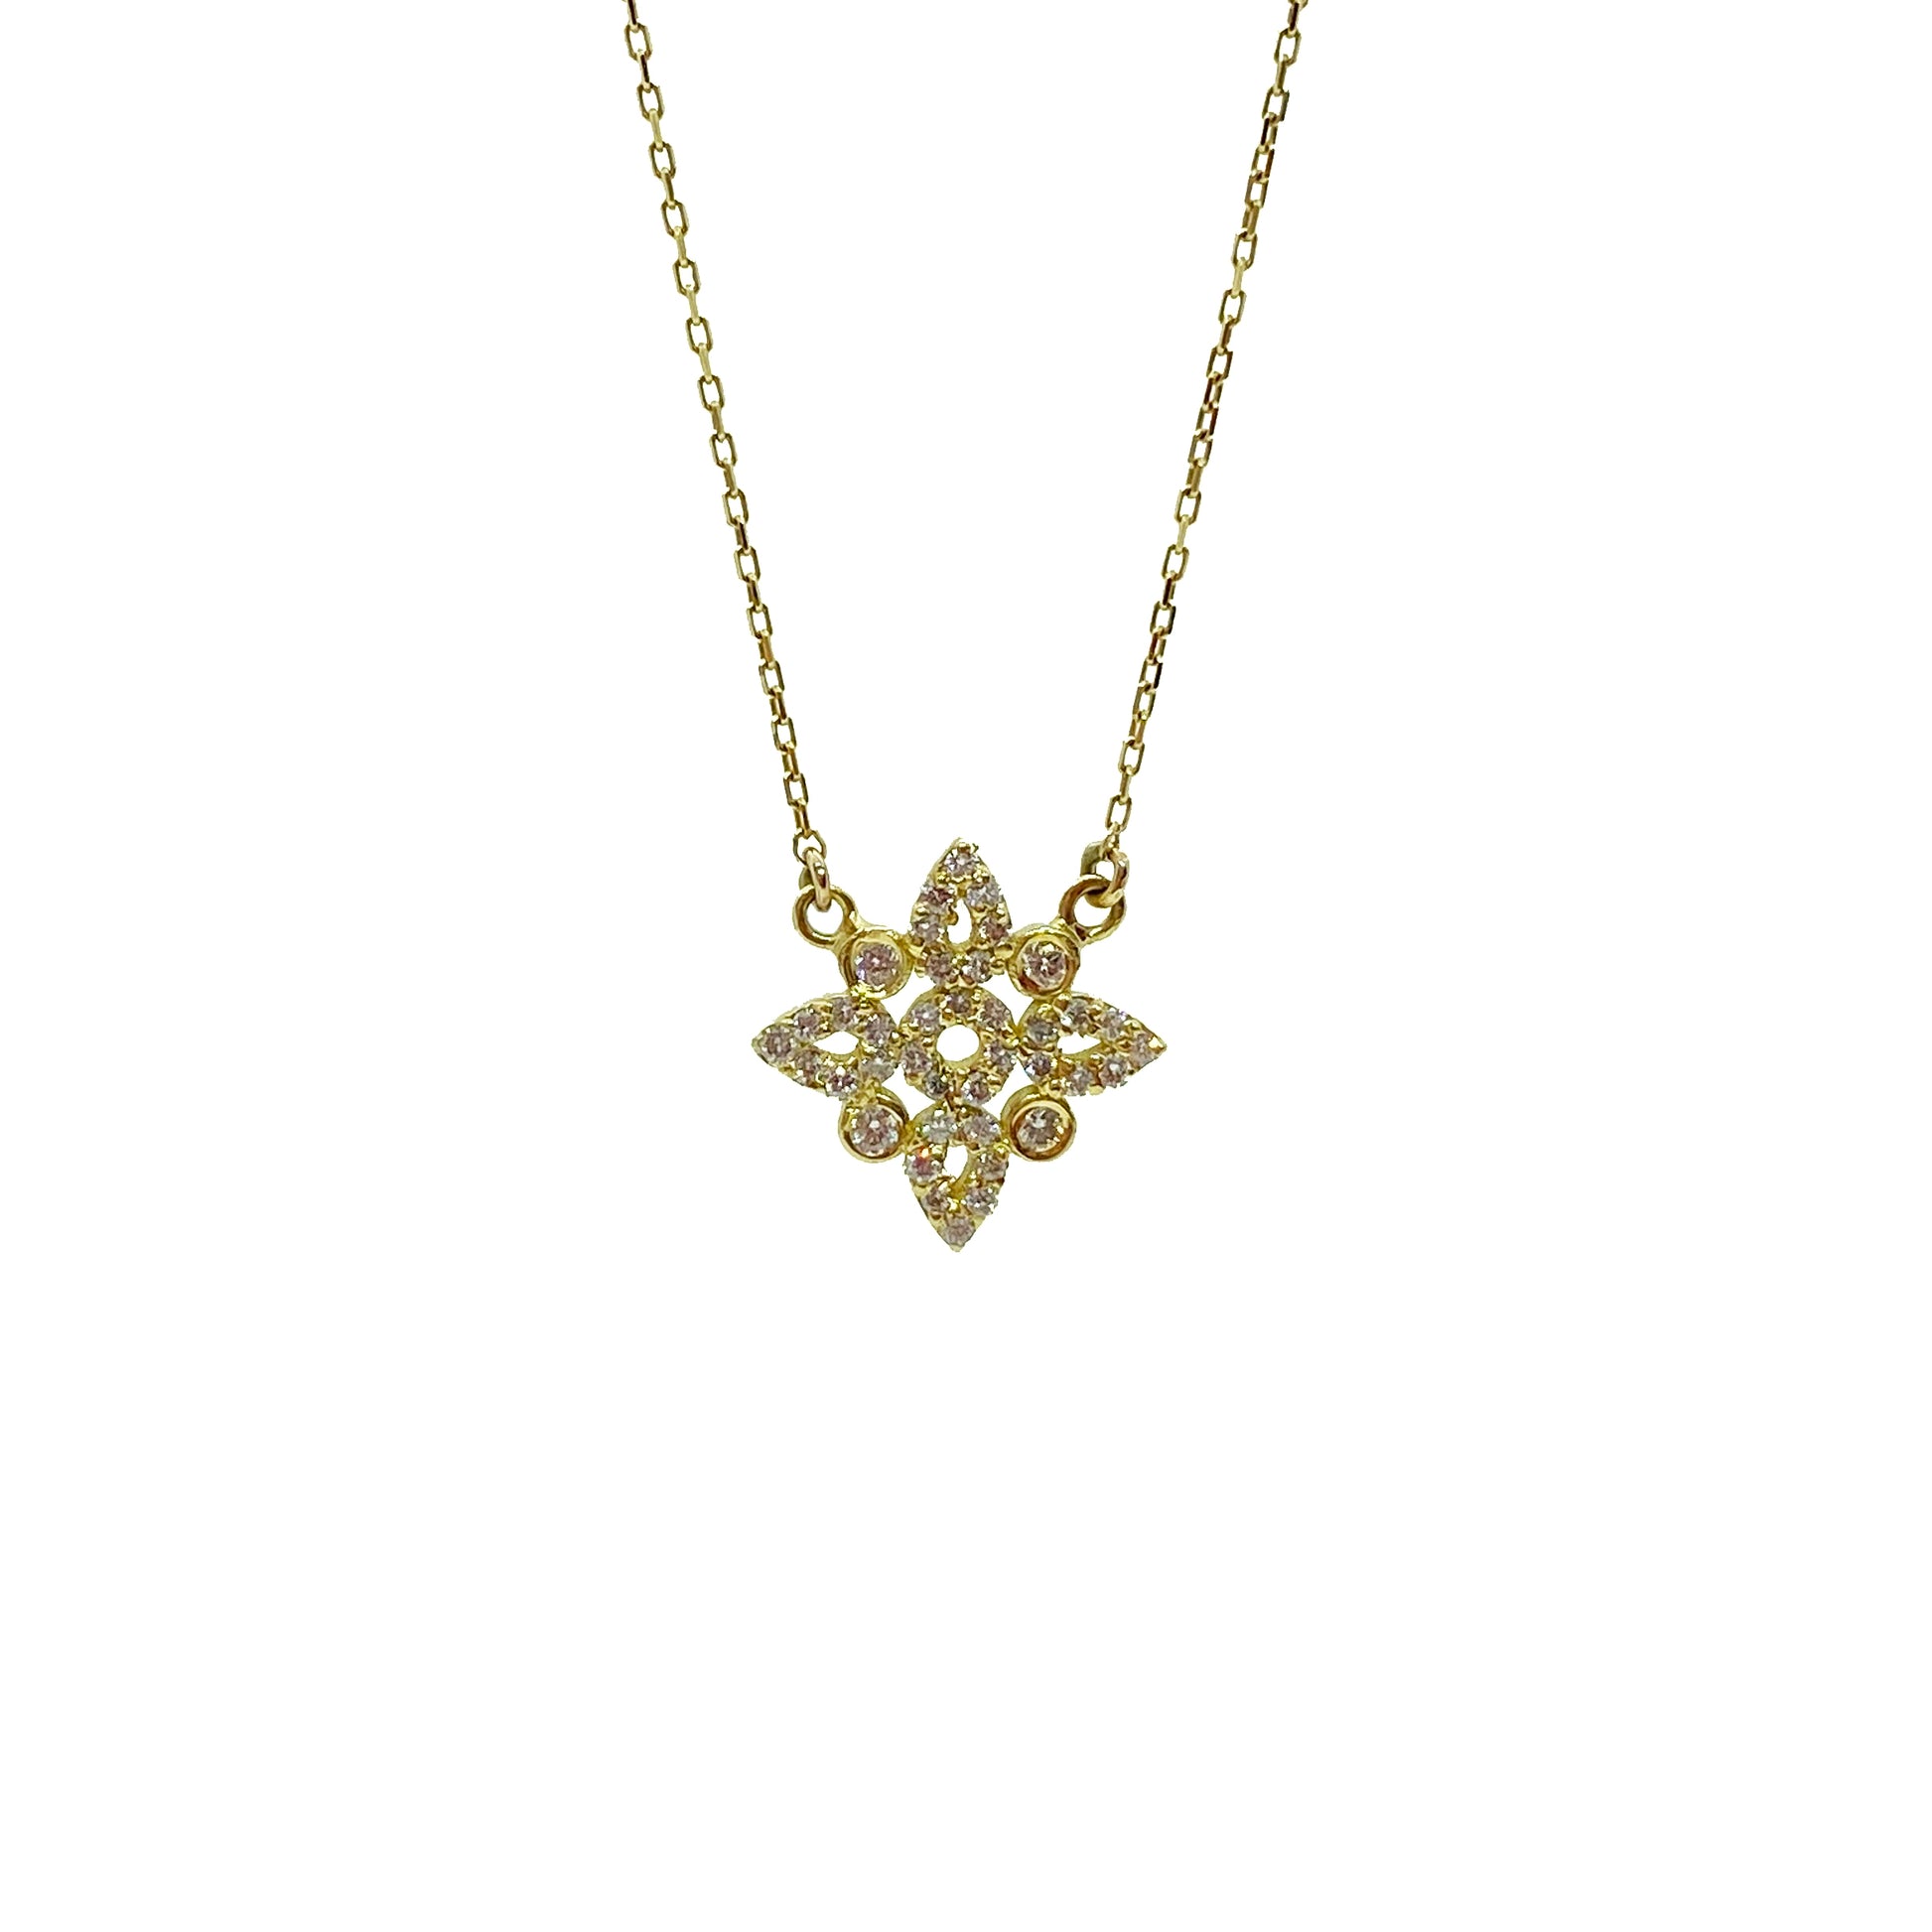 18ky Diamond Flower Necklace by Ferro & Fiori - eklektic jewelry studio